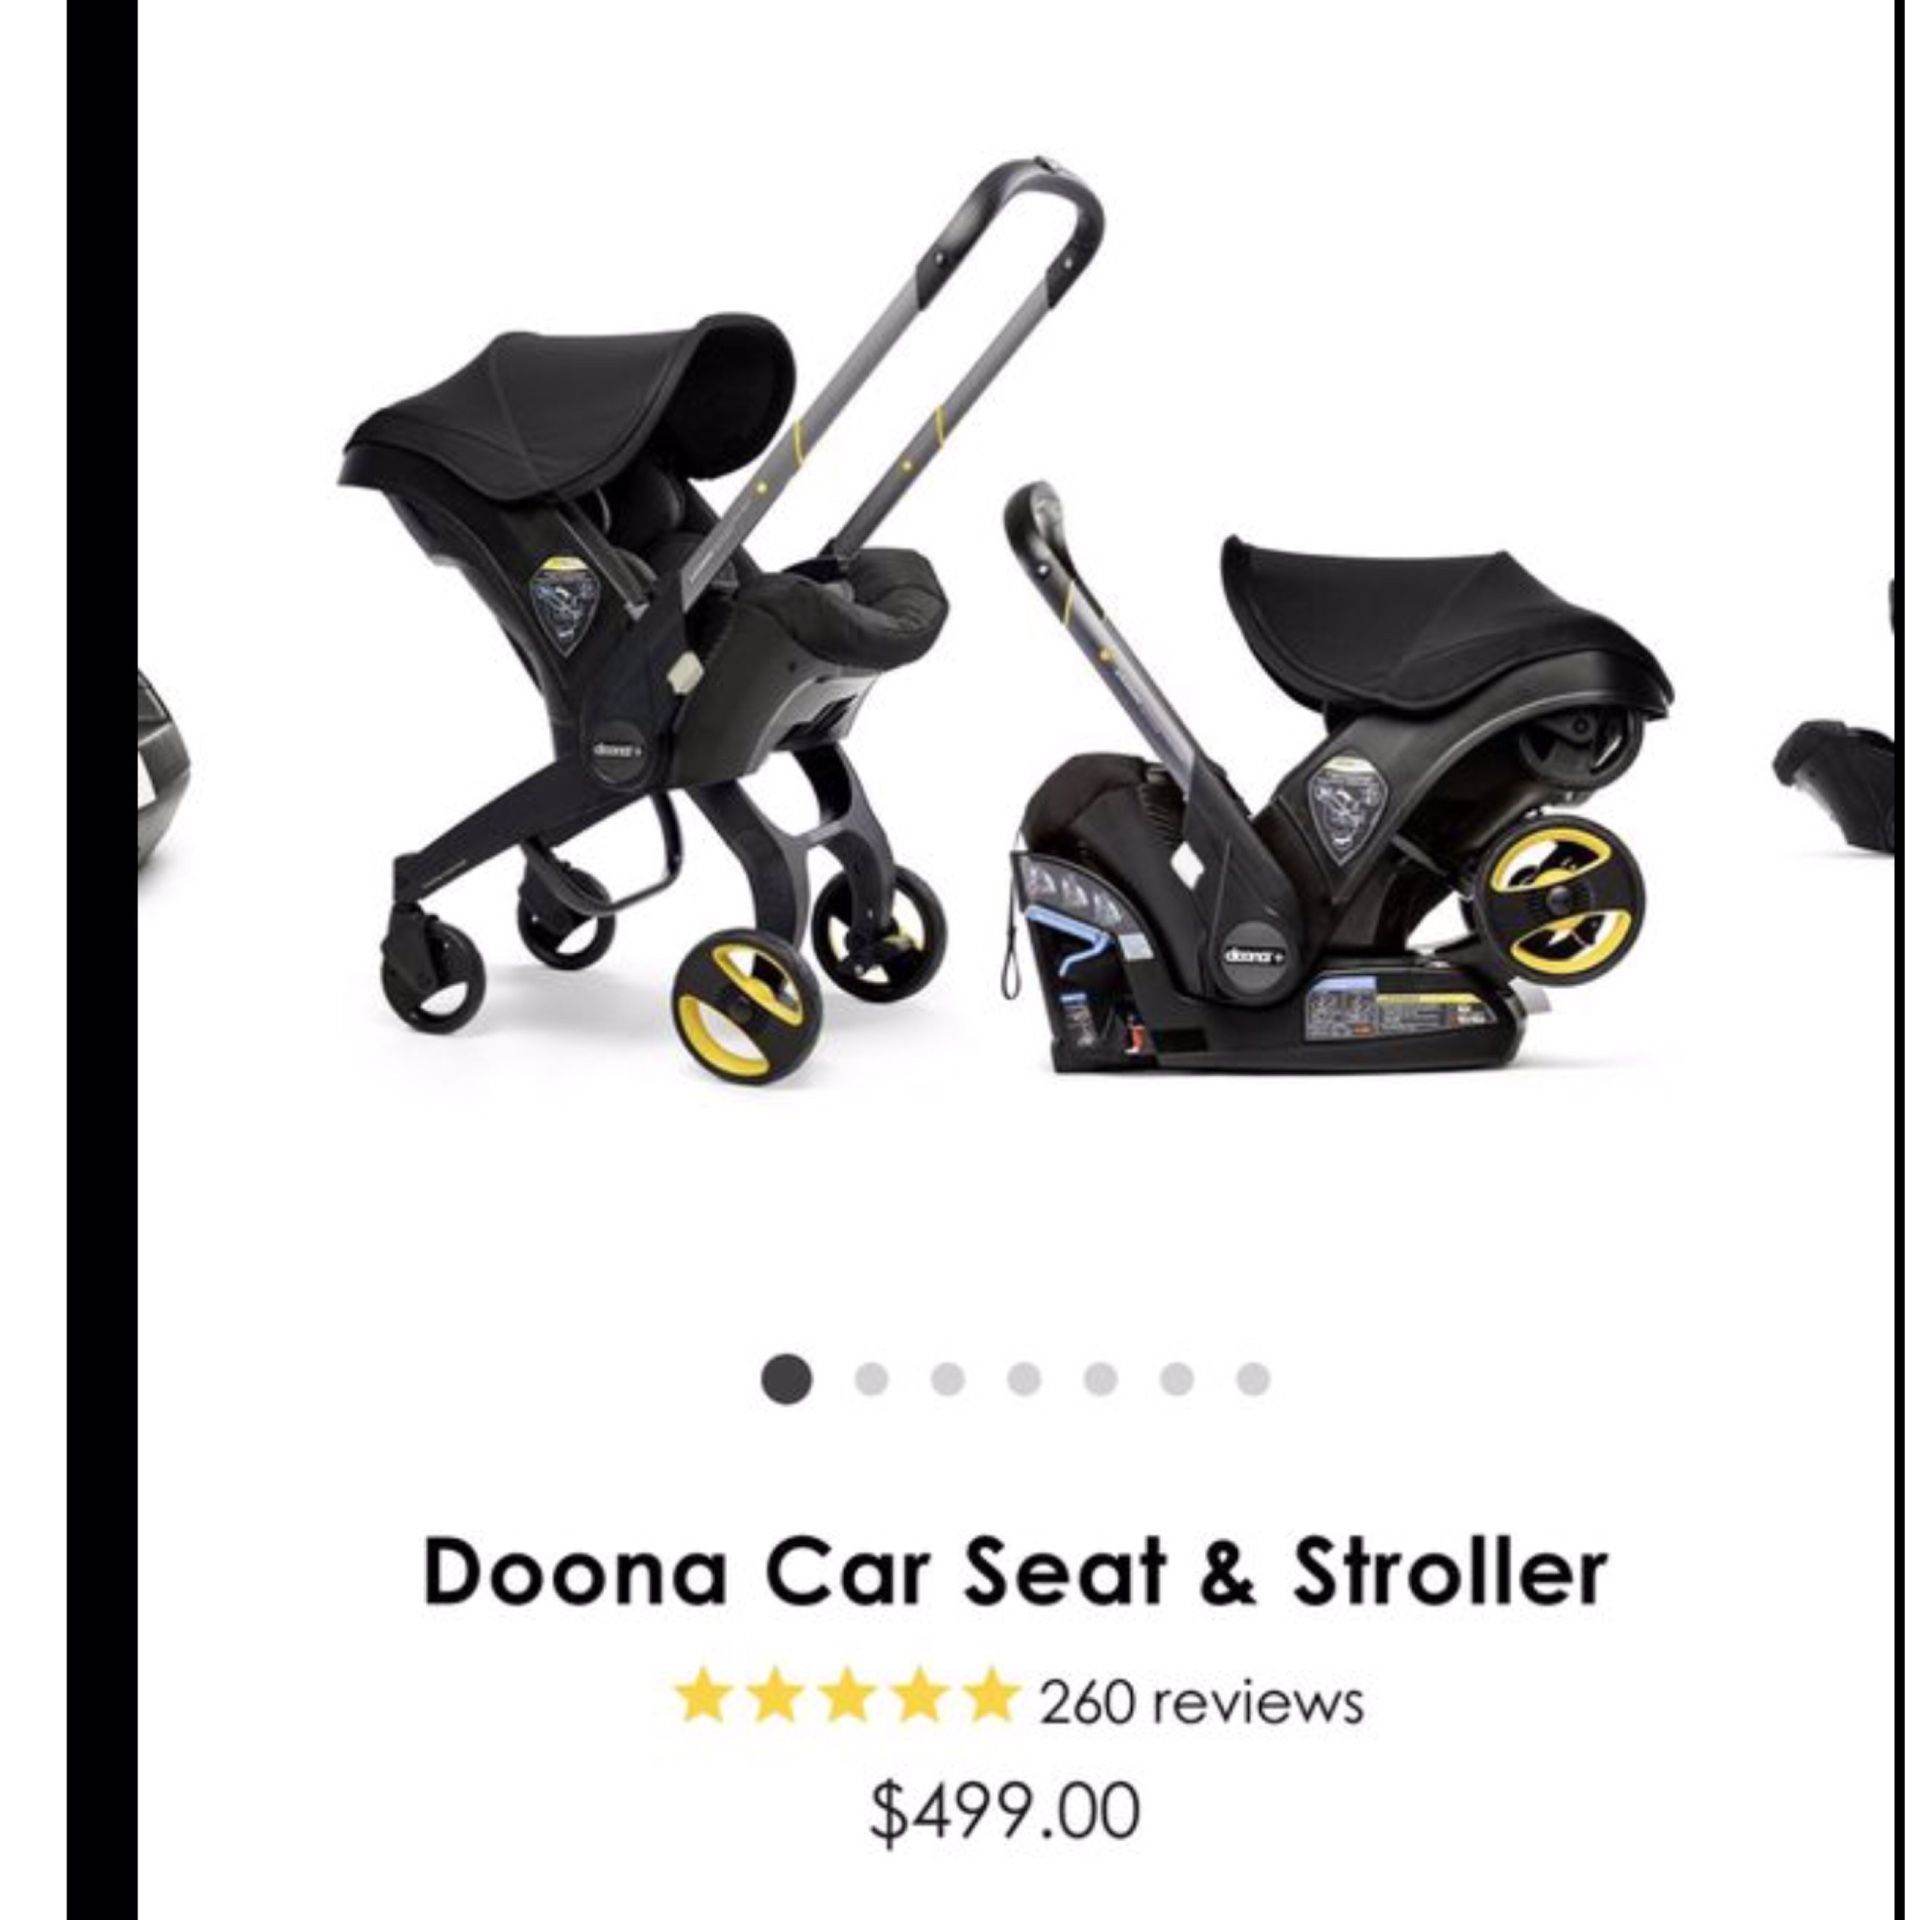 Doona car seat & Stroller